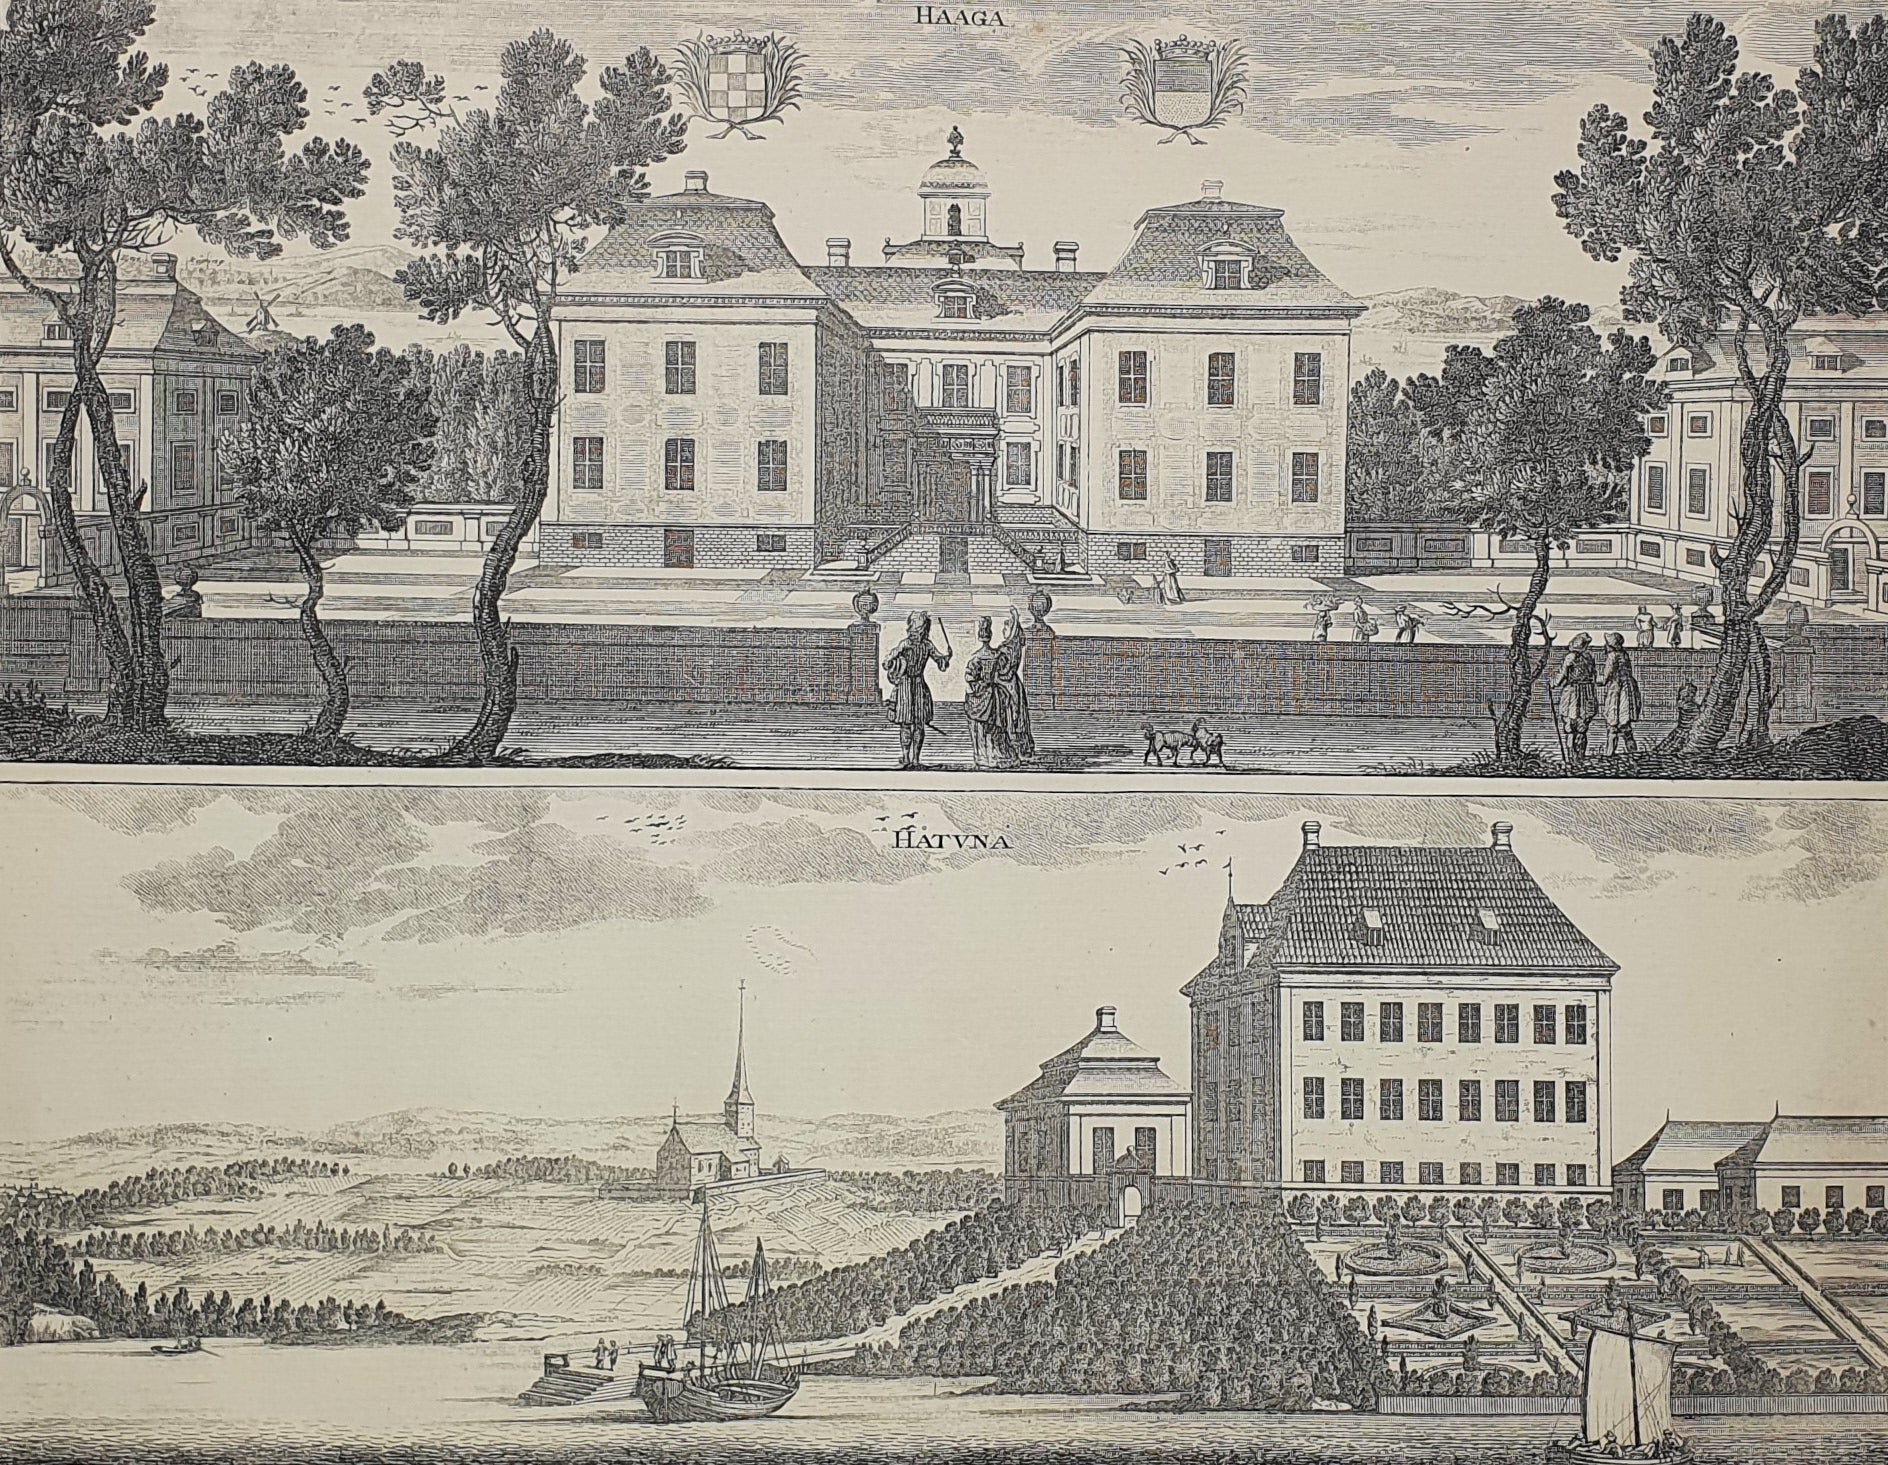 Antique Topographical Print - Haga Castle, Enkoping - Hatunaholm's Estate - Dahlströms Fine Art